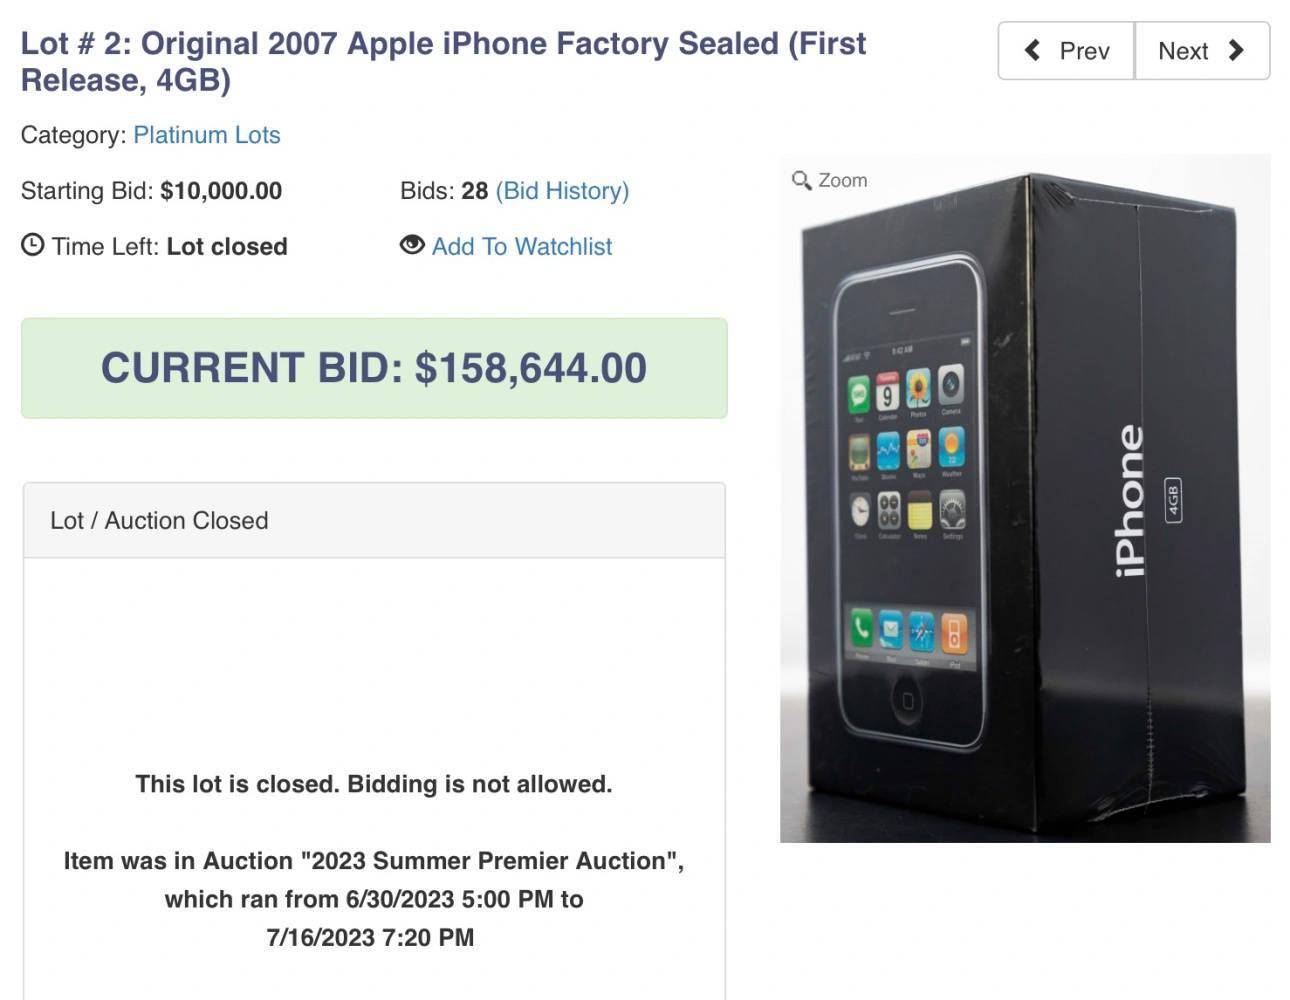 罕见 4GB 未拆封初代 iPhone 拍卖，成交价 15.8 万美元刷新纪录图2